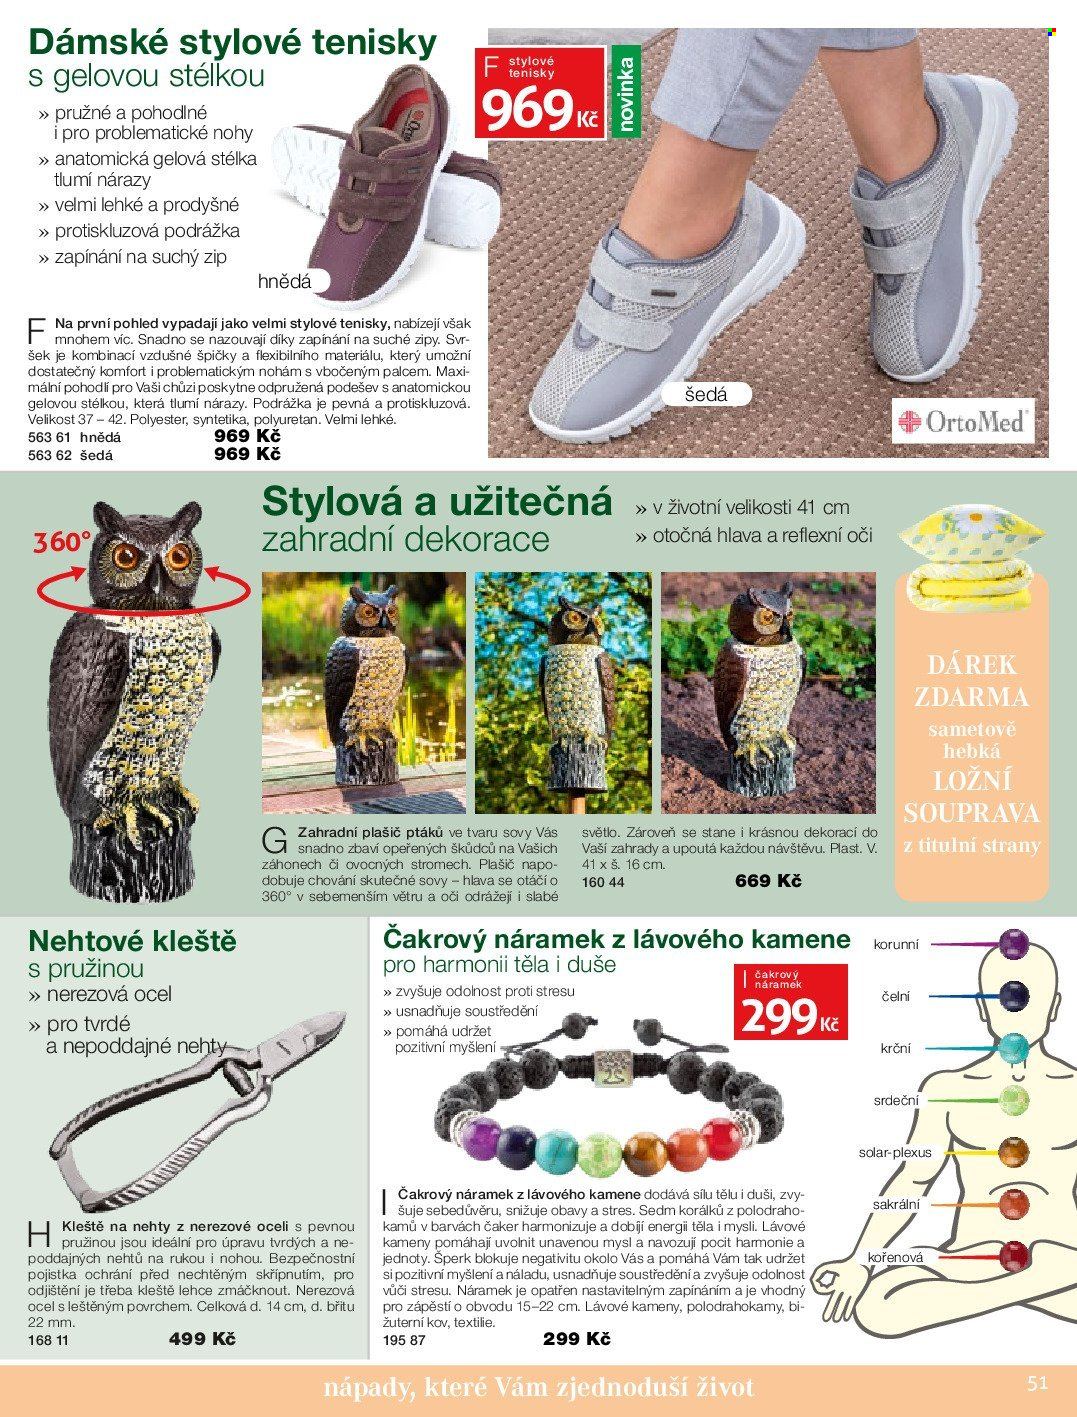 thumbnail - Leták decoDoma - Produkty v akci - pohled, ložní souprava, zahradní dekorace, plašič ptáků, boty, tenisky, náramek. Strana 51.